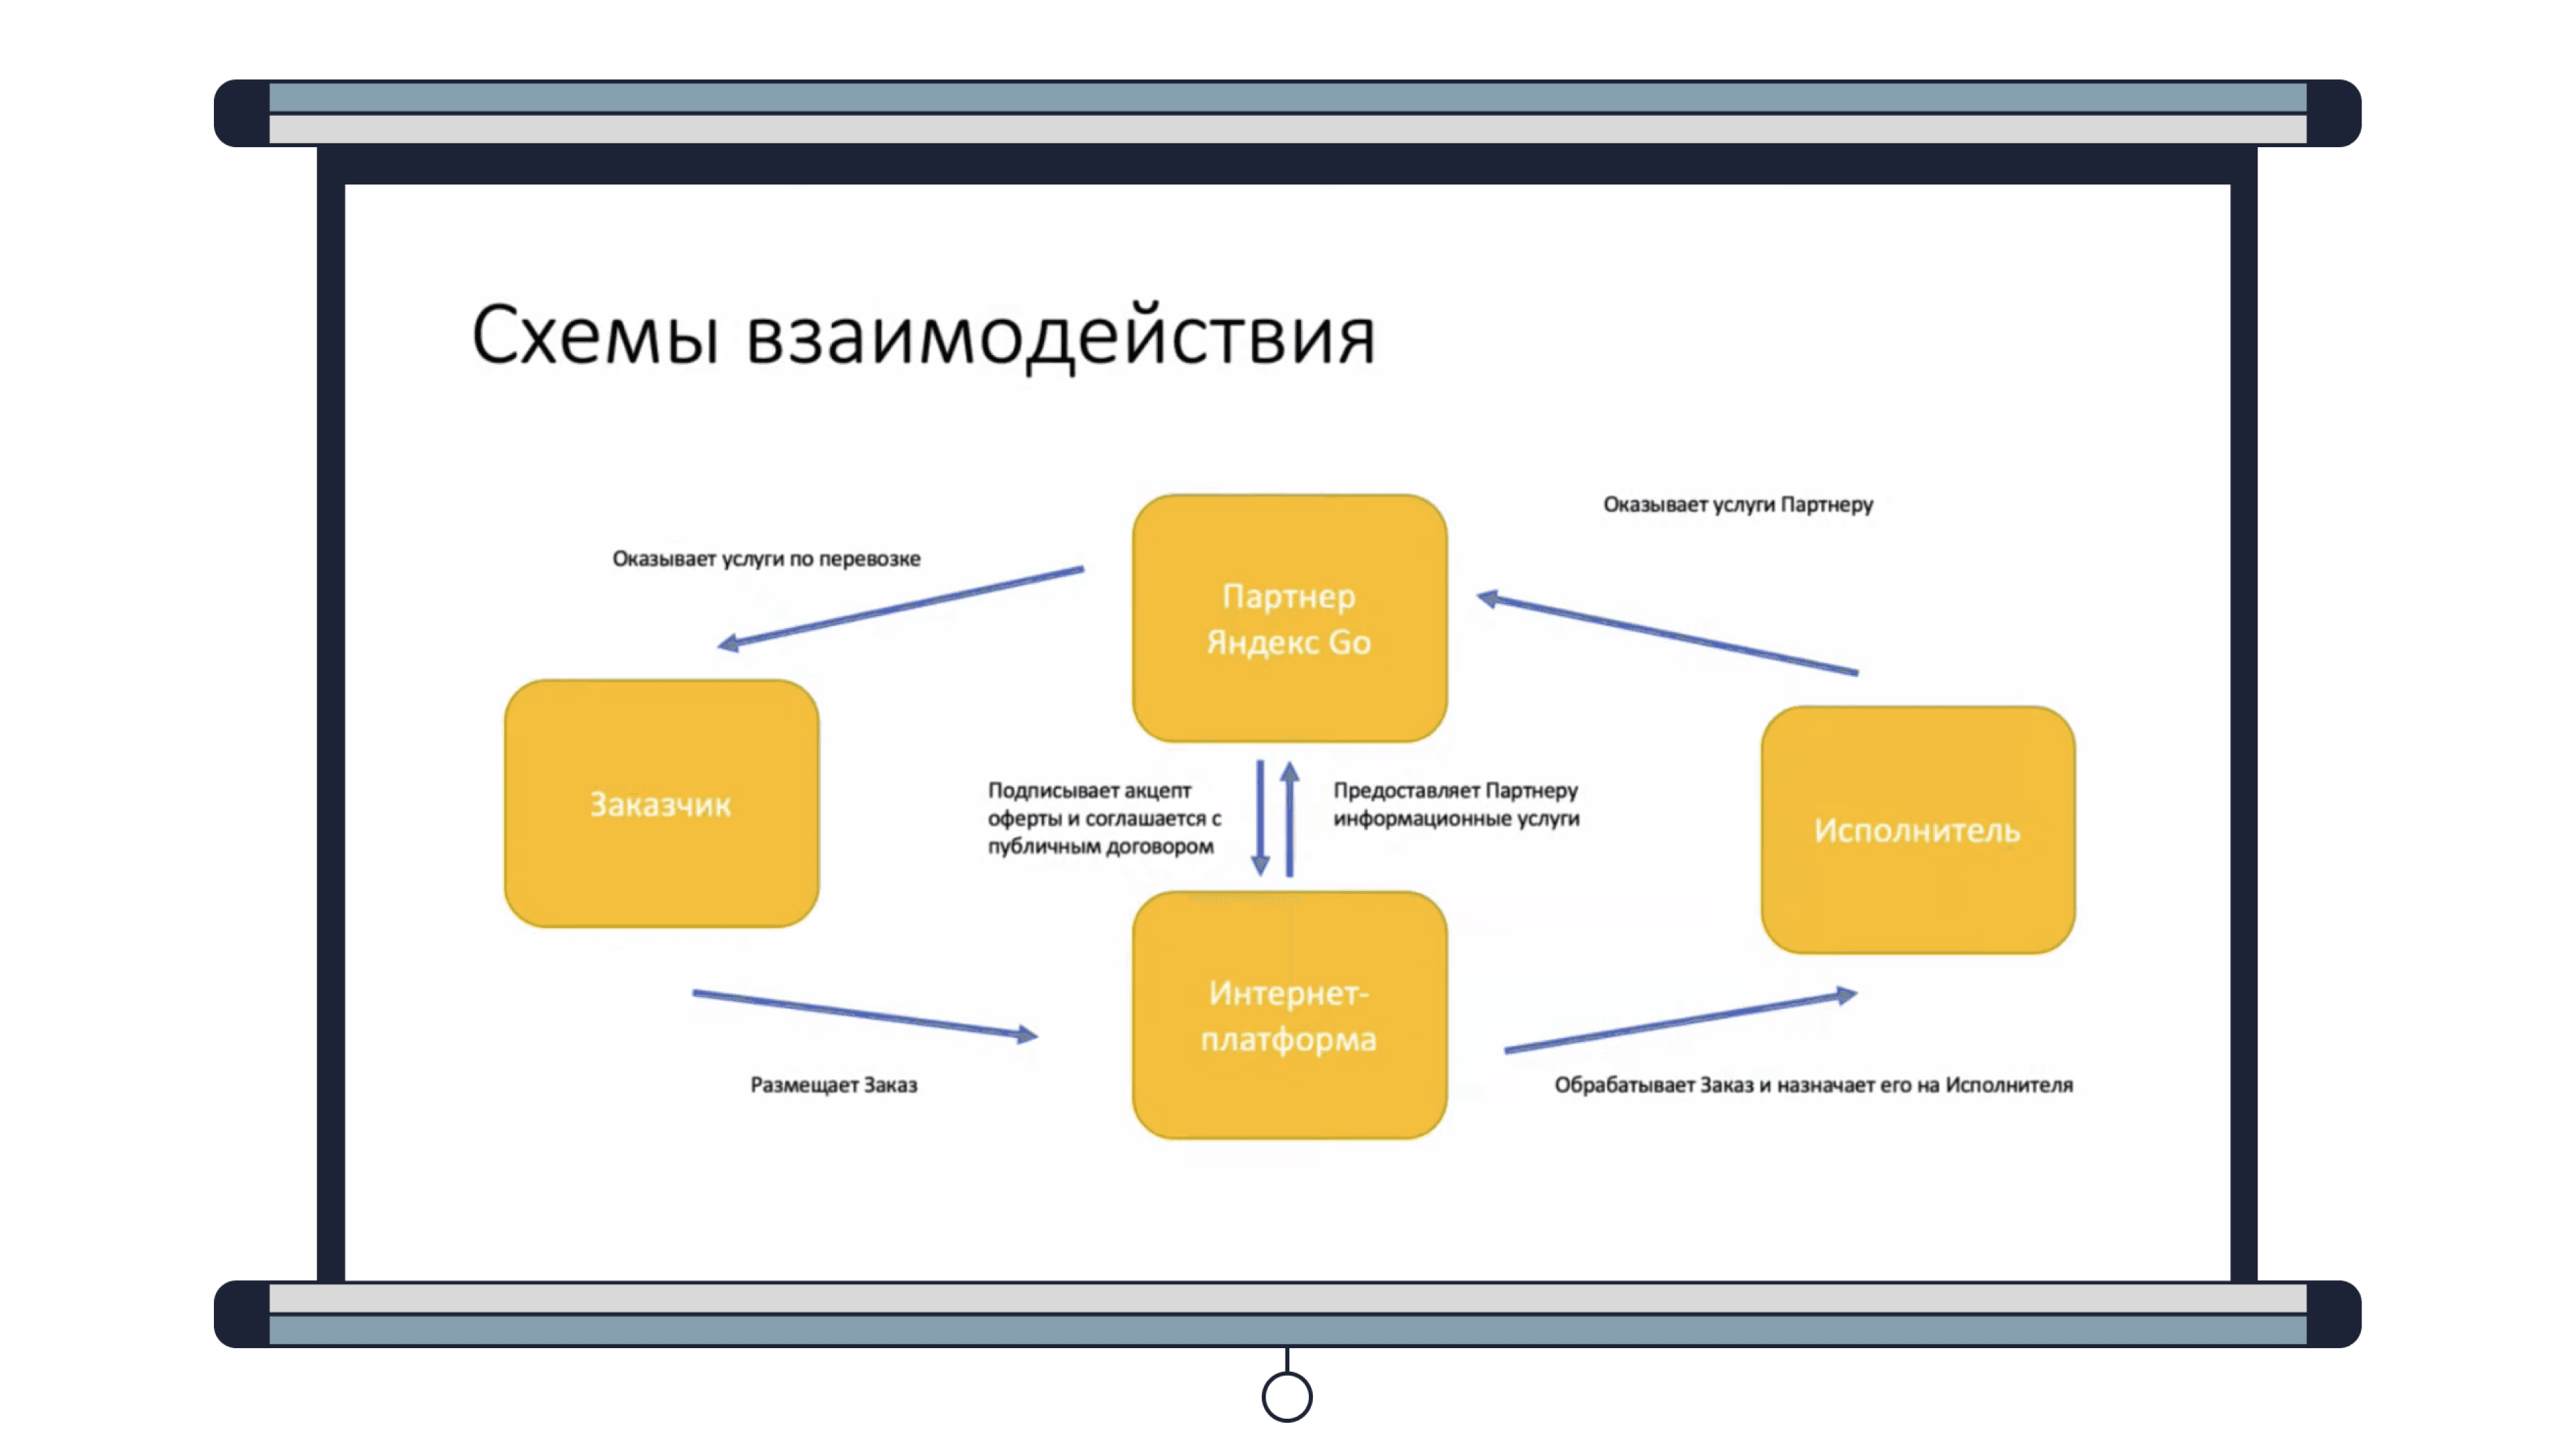 Схема по стандартному шаблону PowerPoint